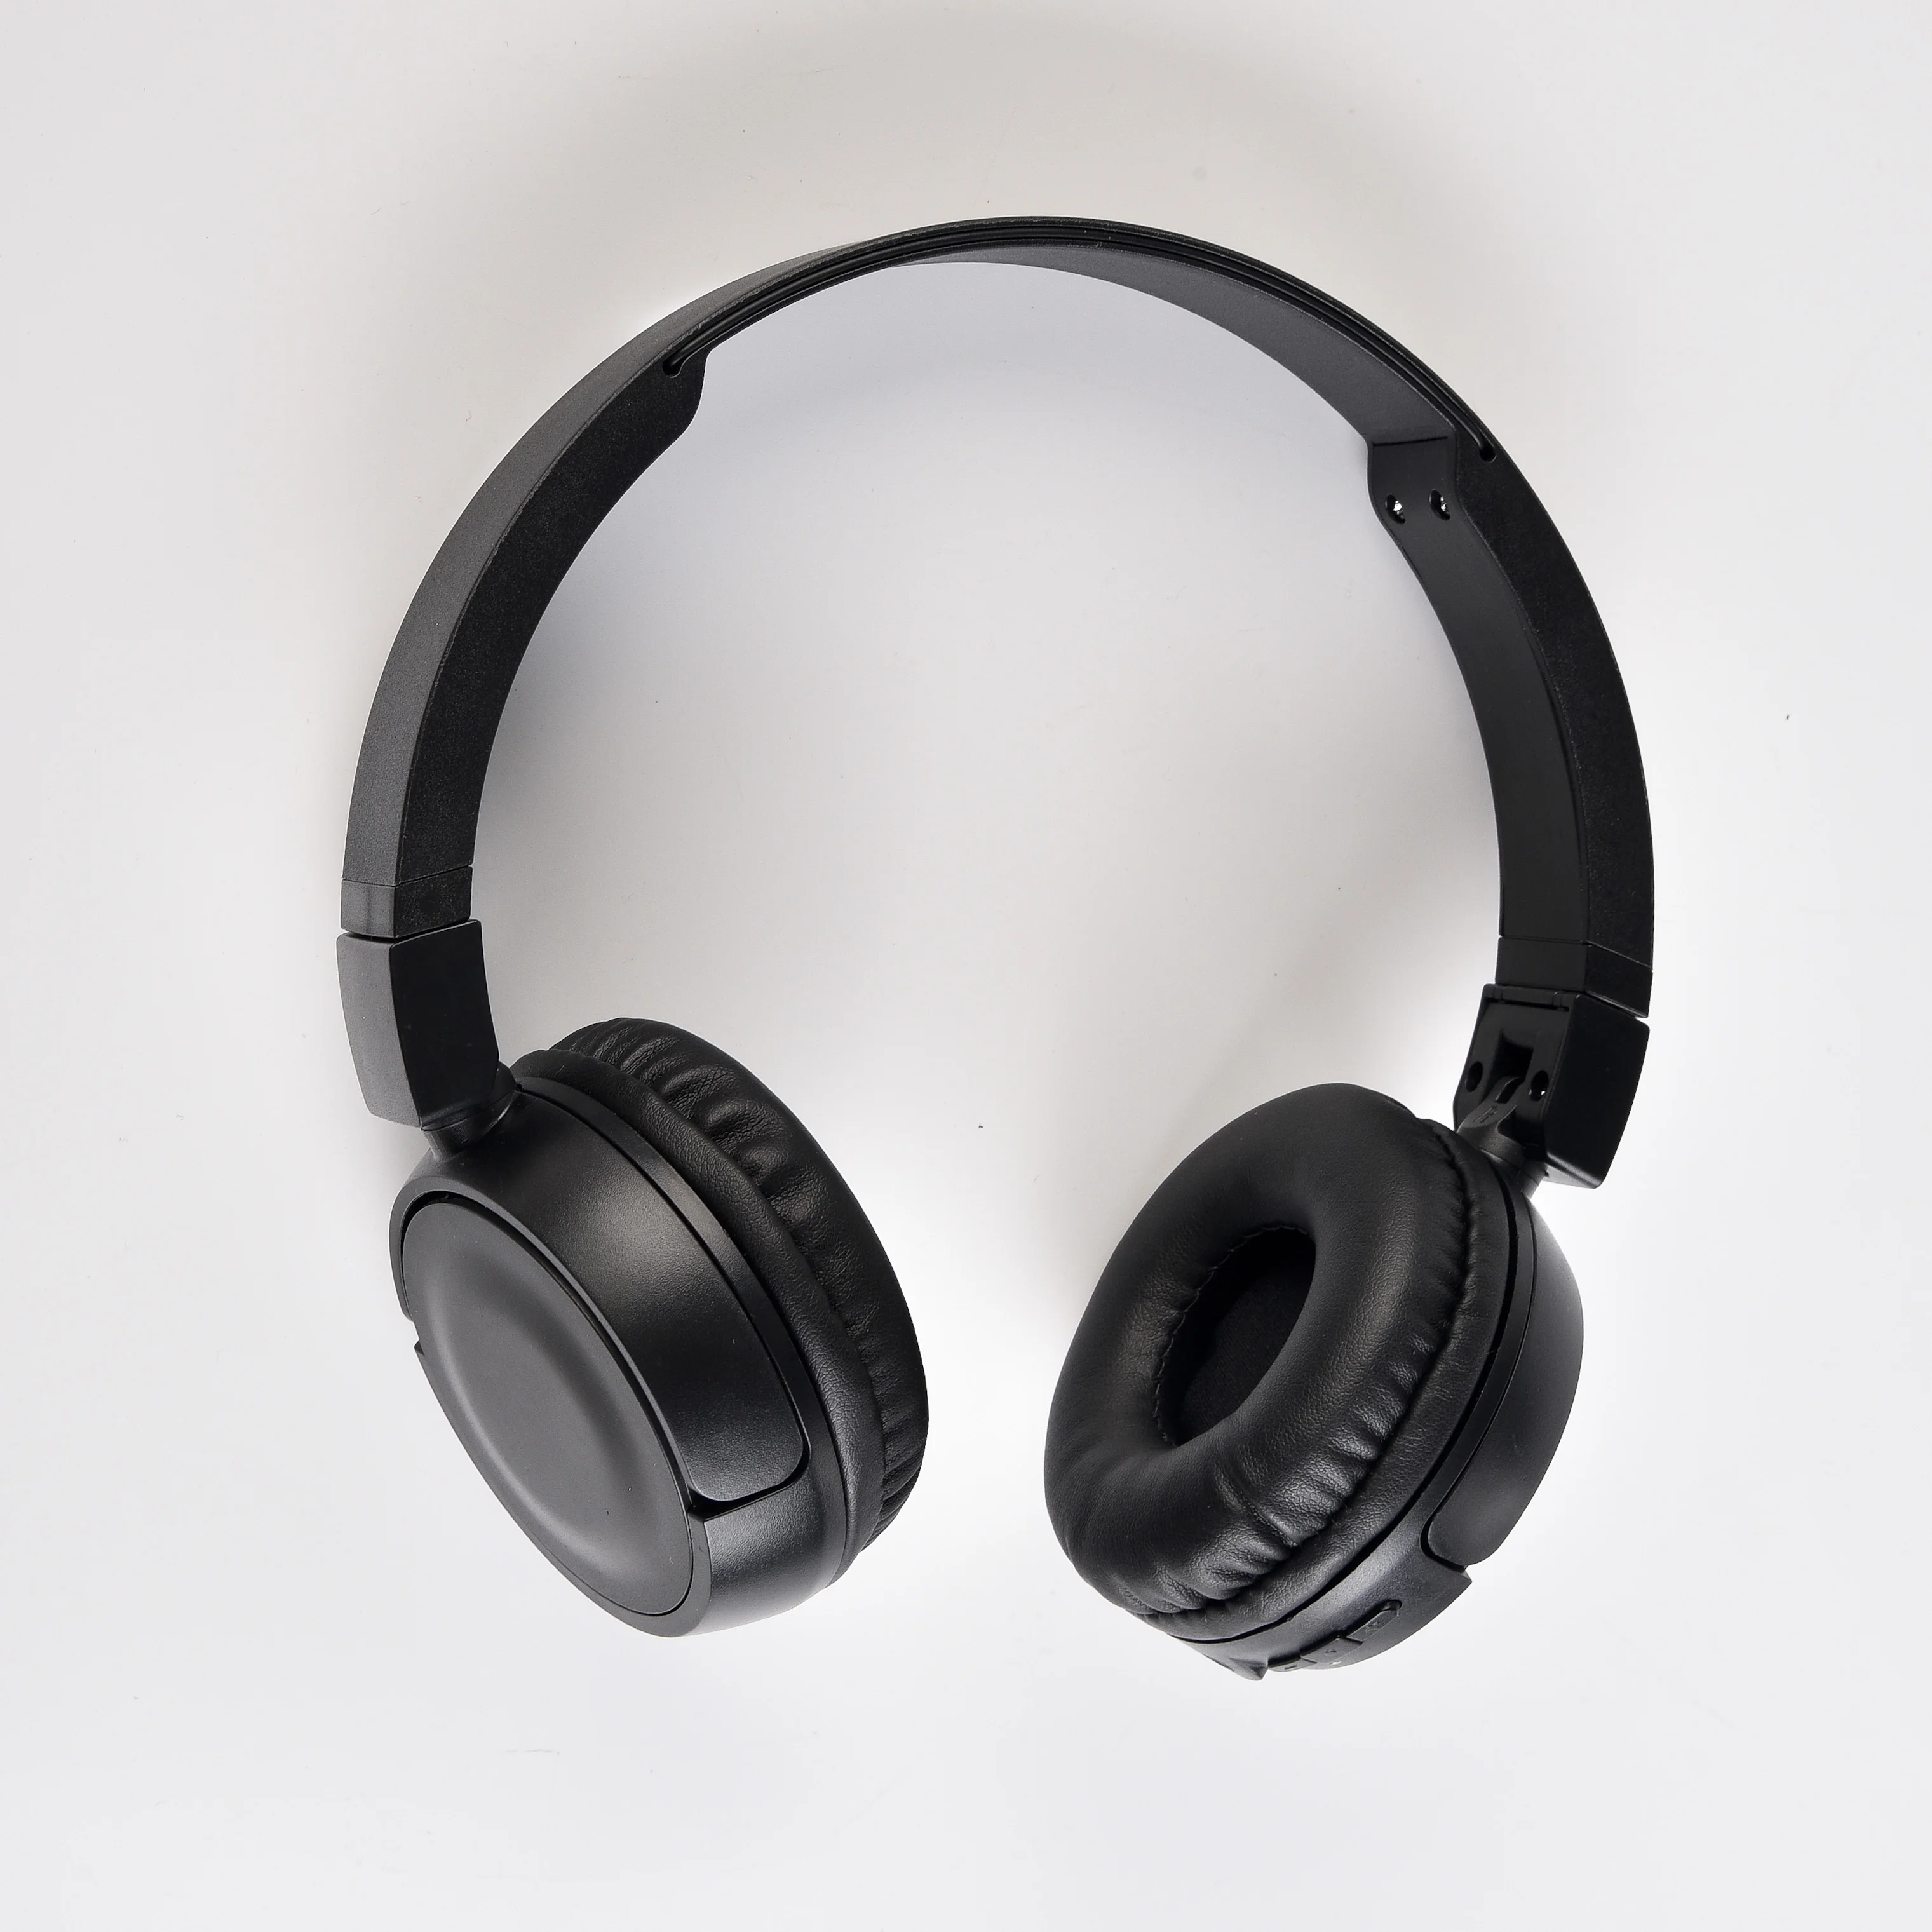 0 游戏耳机 2019 入耳式耳机深低音耳机 i12 earpods inpods 耳机